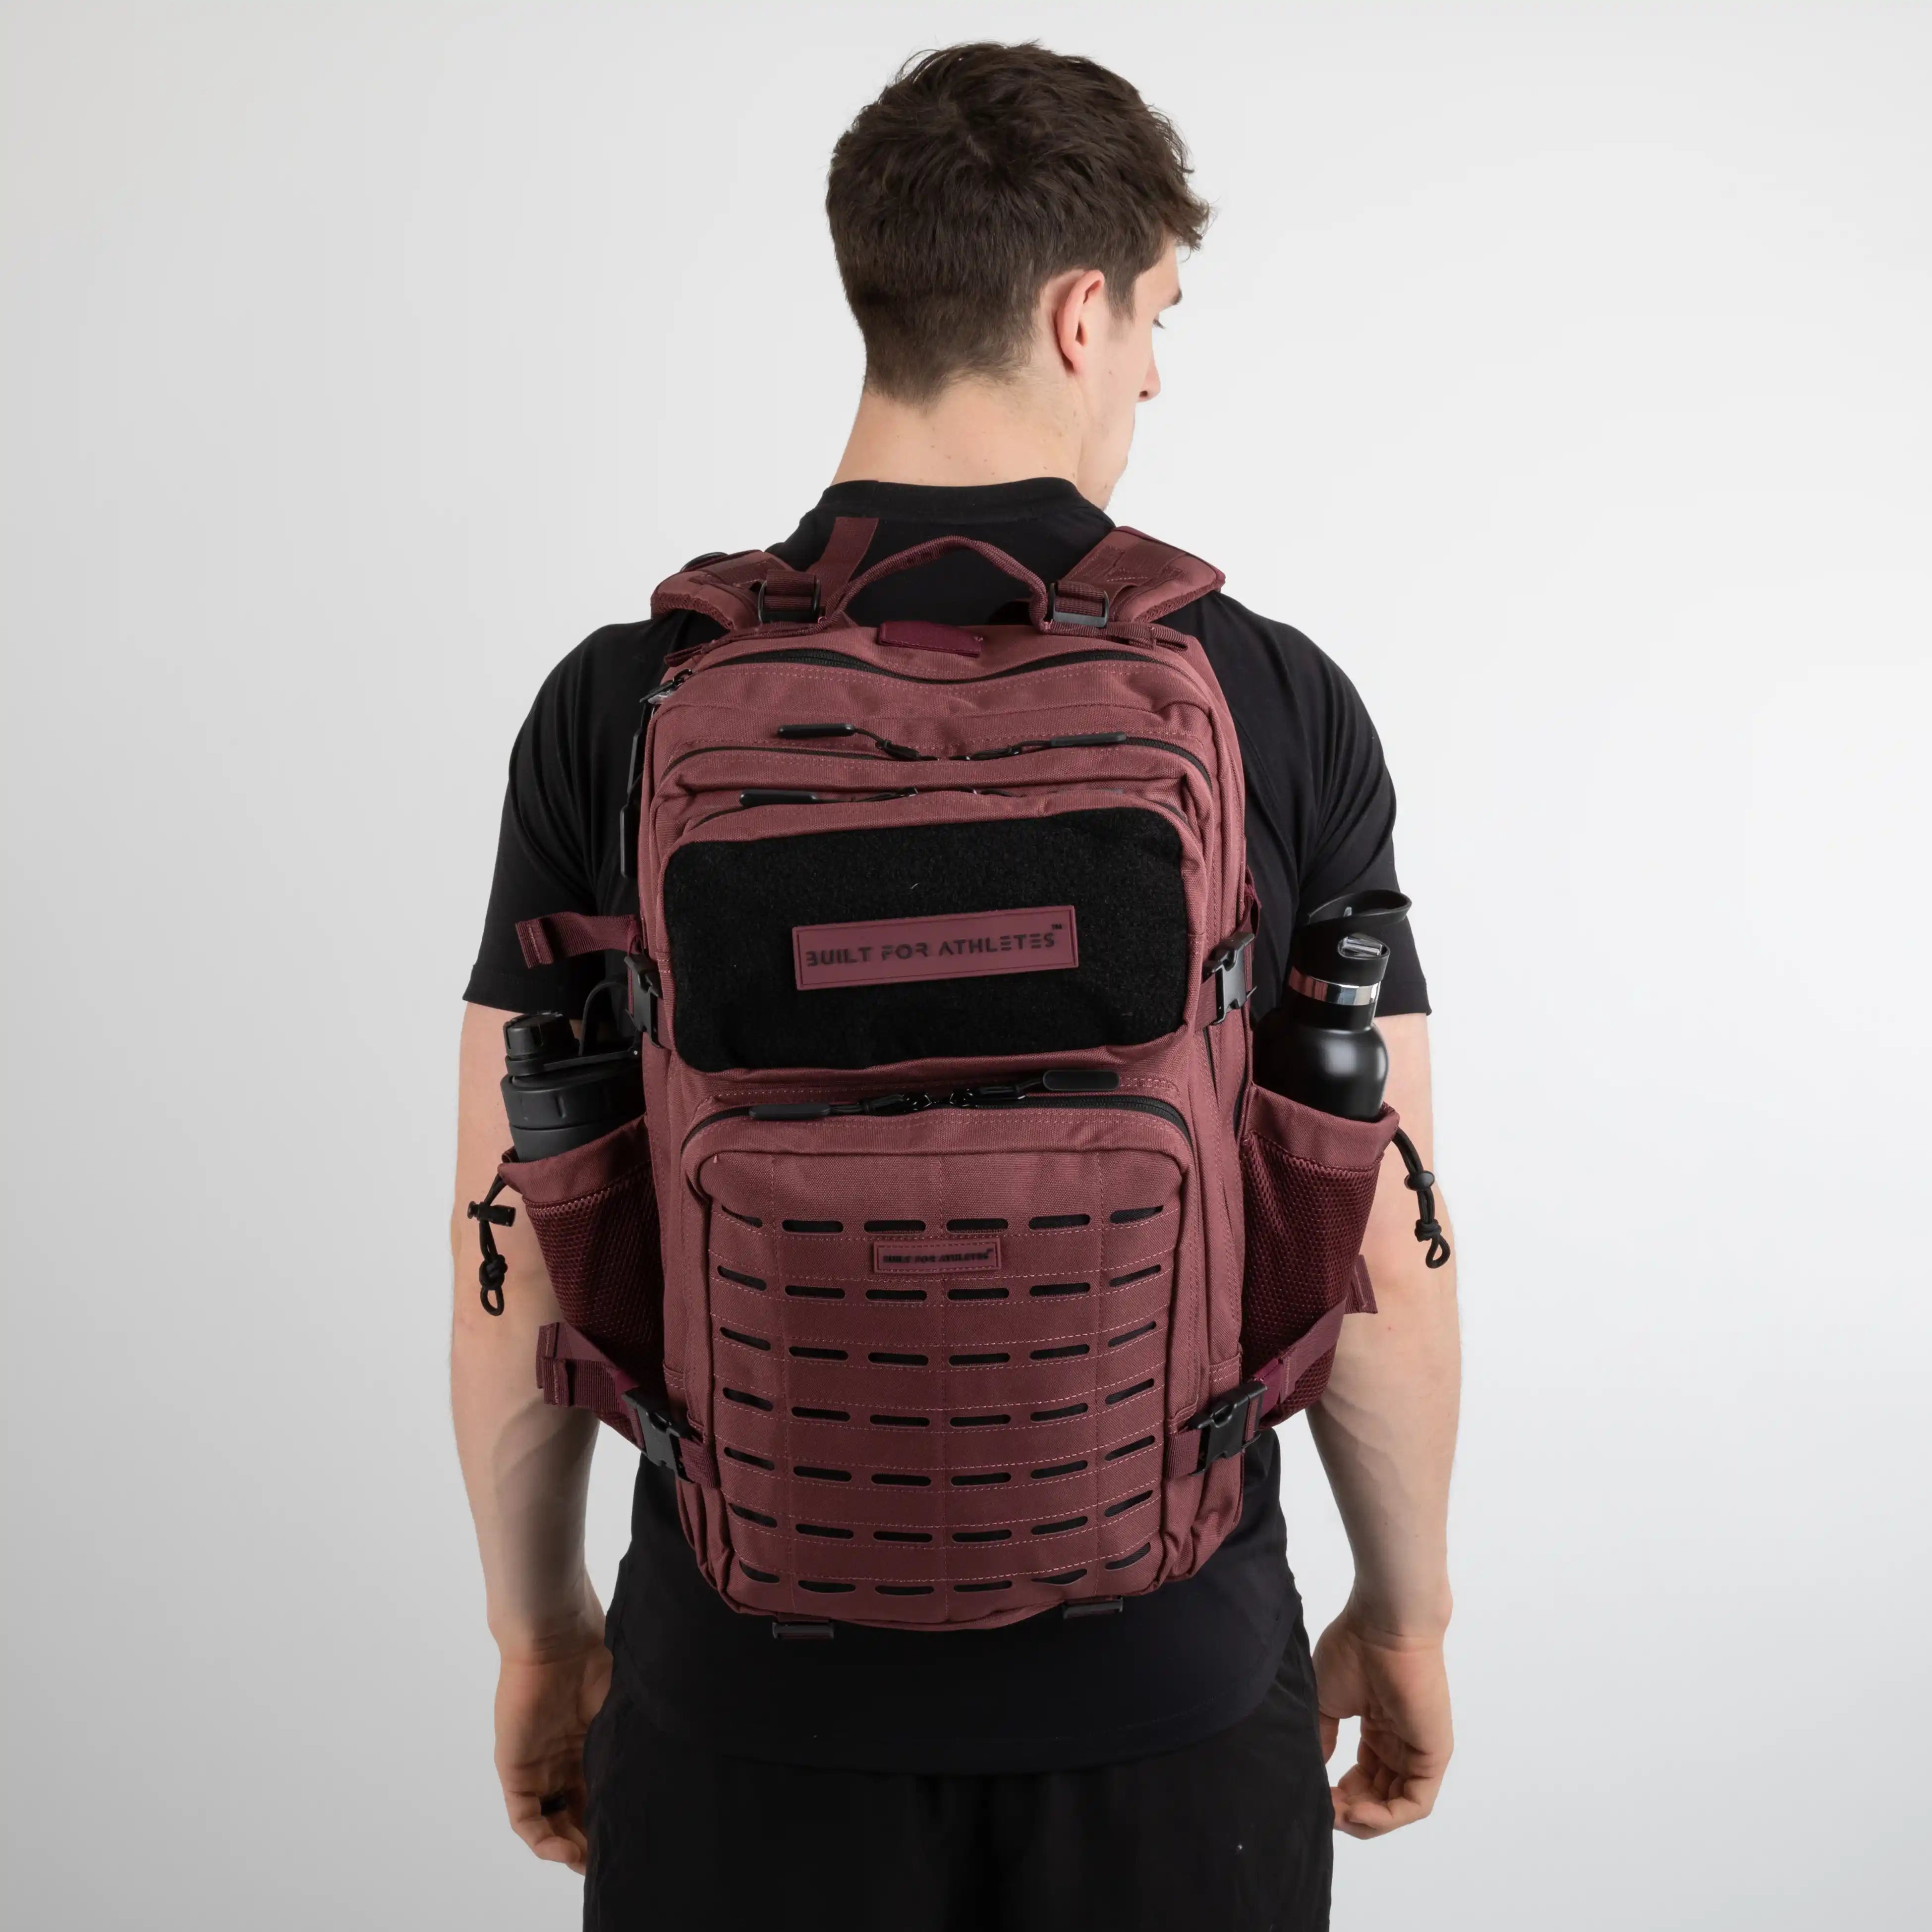 Built for Athletes Backpacks Large Burgundy Gym Backpack